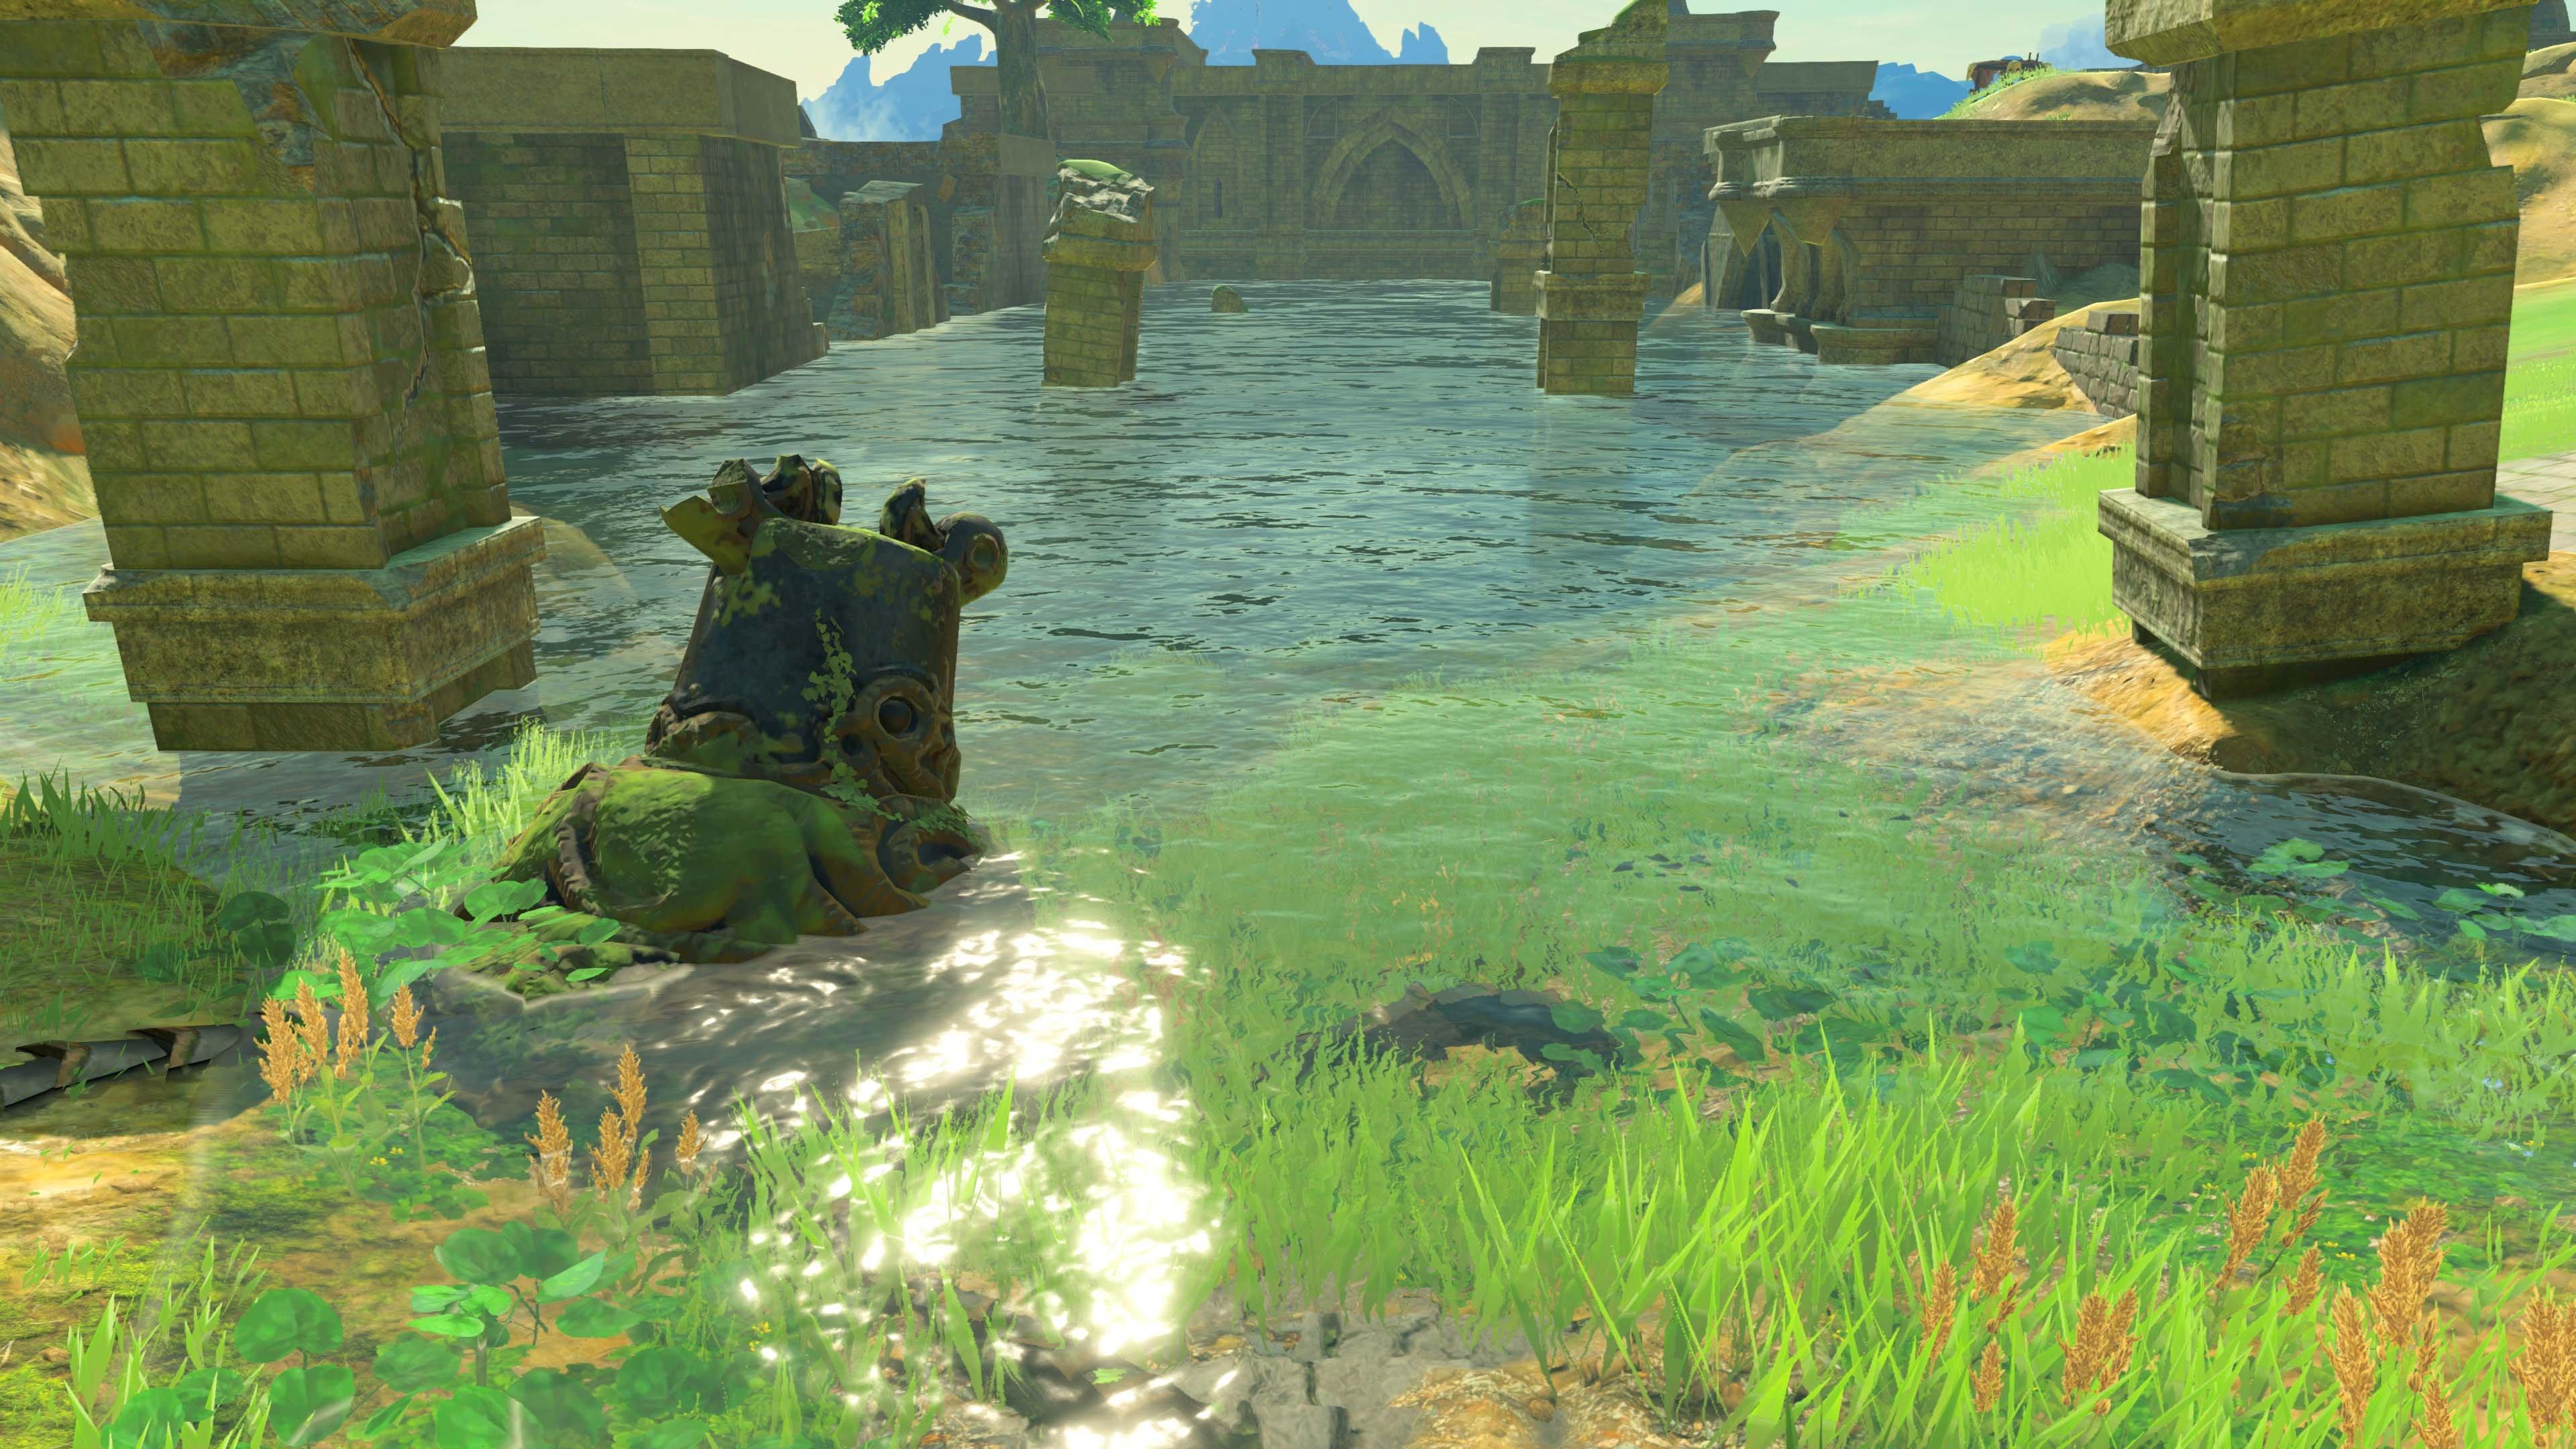 The Legend of Zelda: Breath of the Wild - Nintendo Wii U | Nintendo Wii U |  GameStop